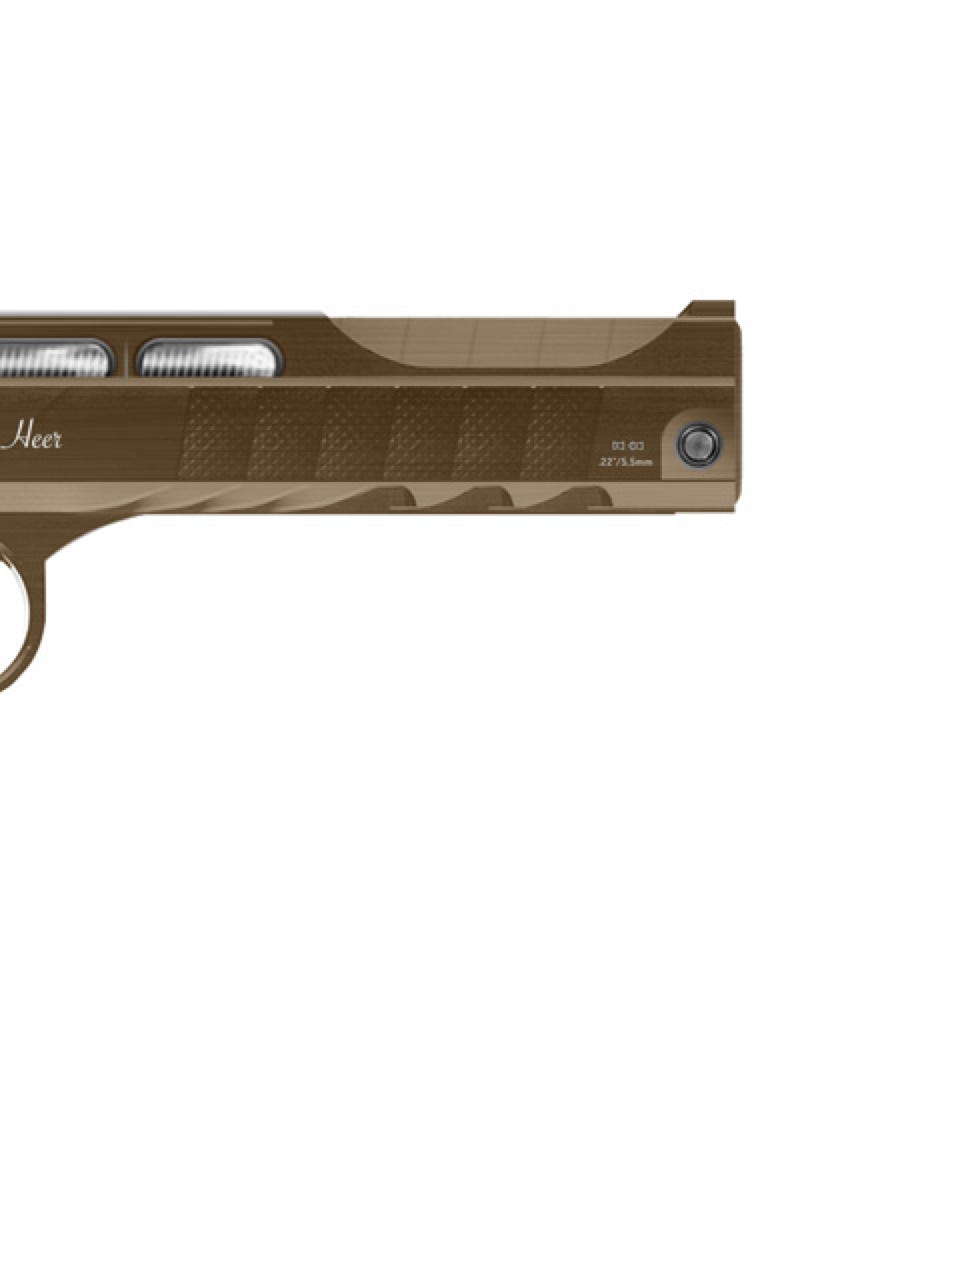 Pistol: SKULL P-7 HEER / High power and precision air gun pistol